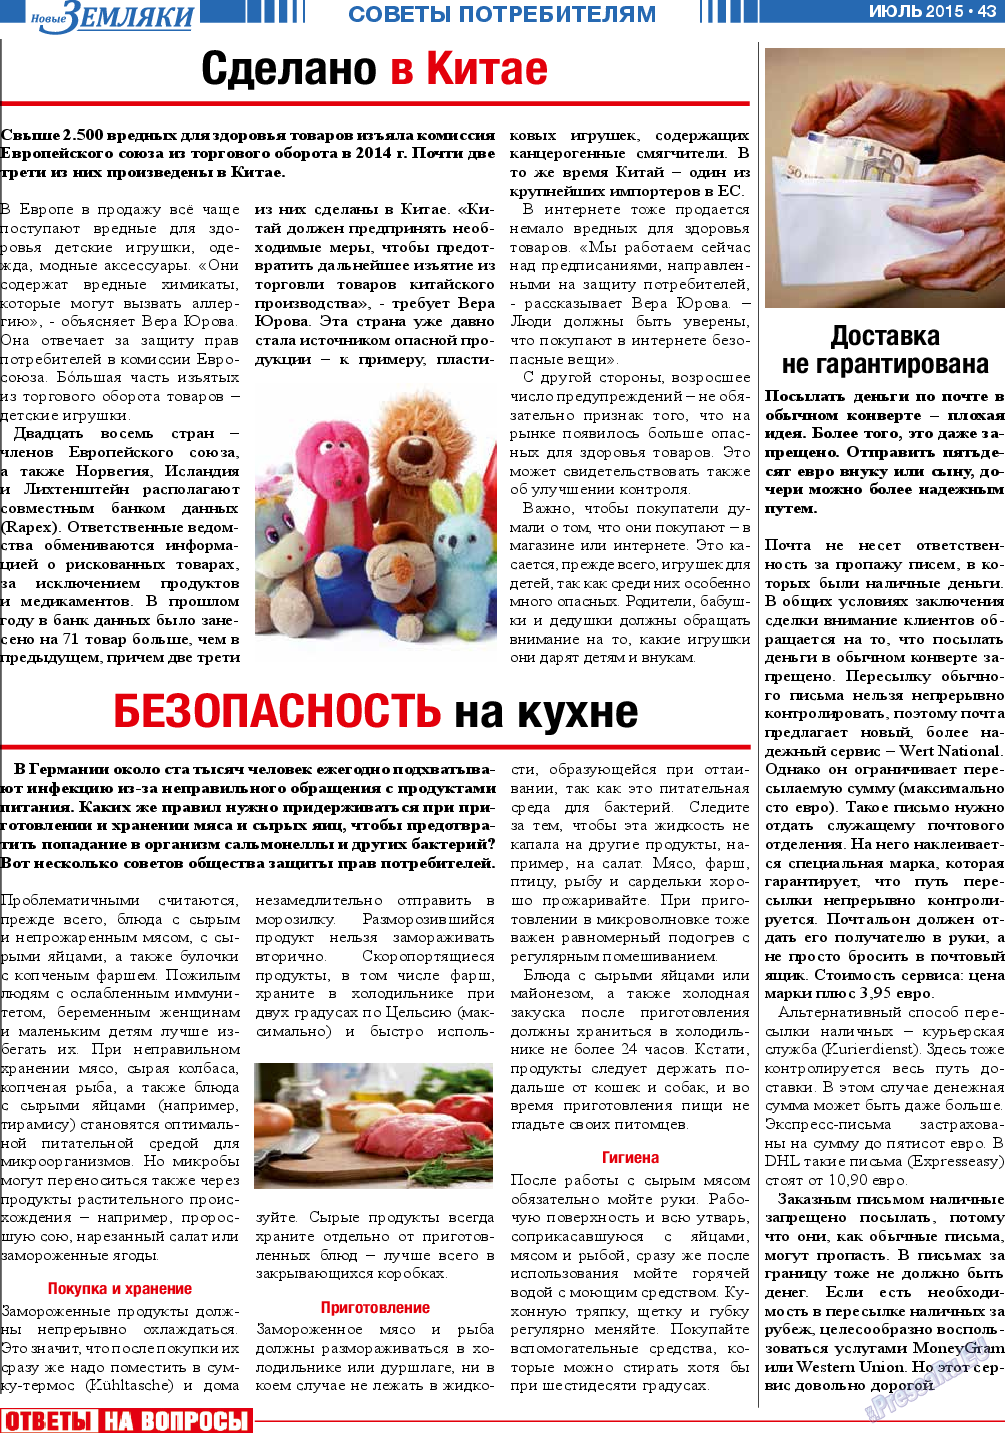 Новые Земляки, газета. 2015 №7 стр.43